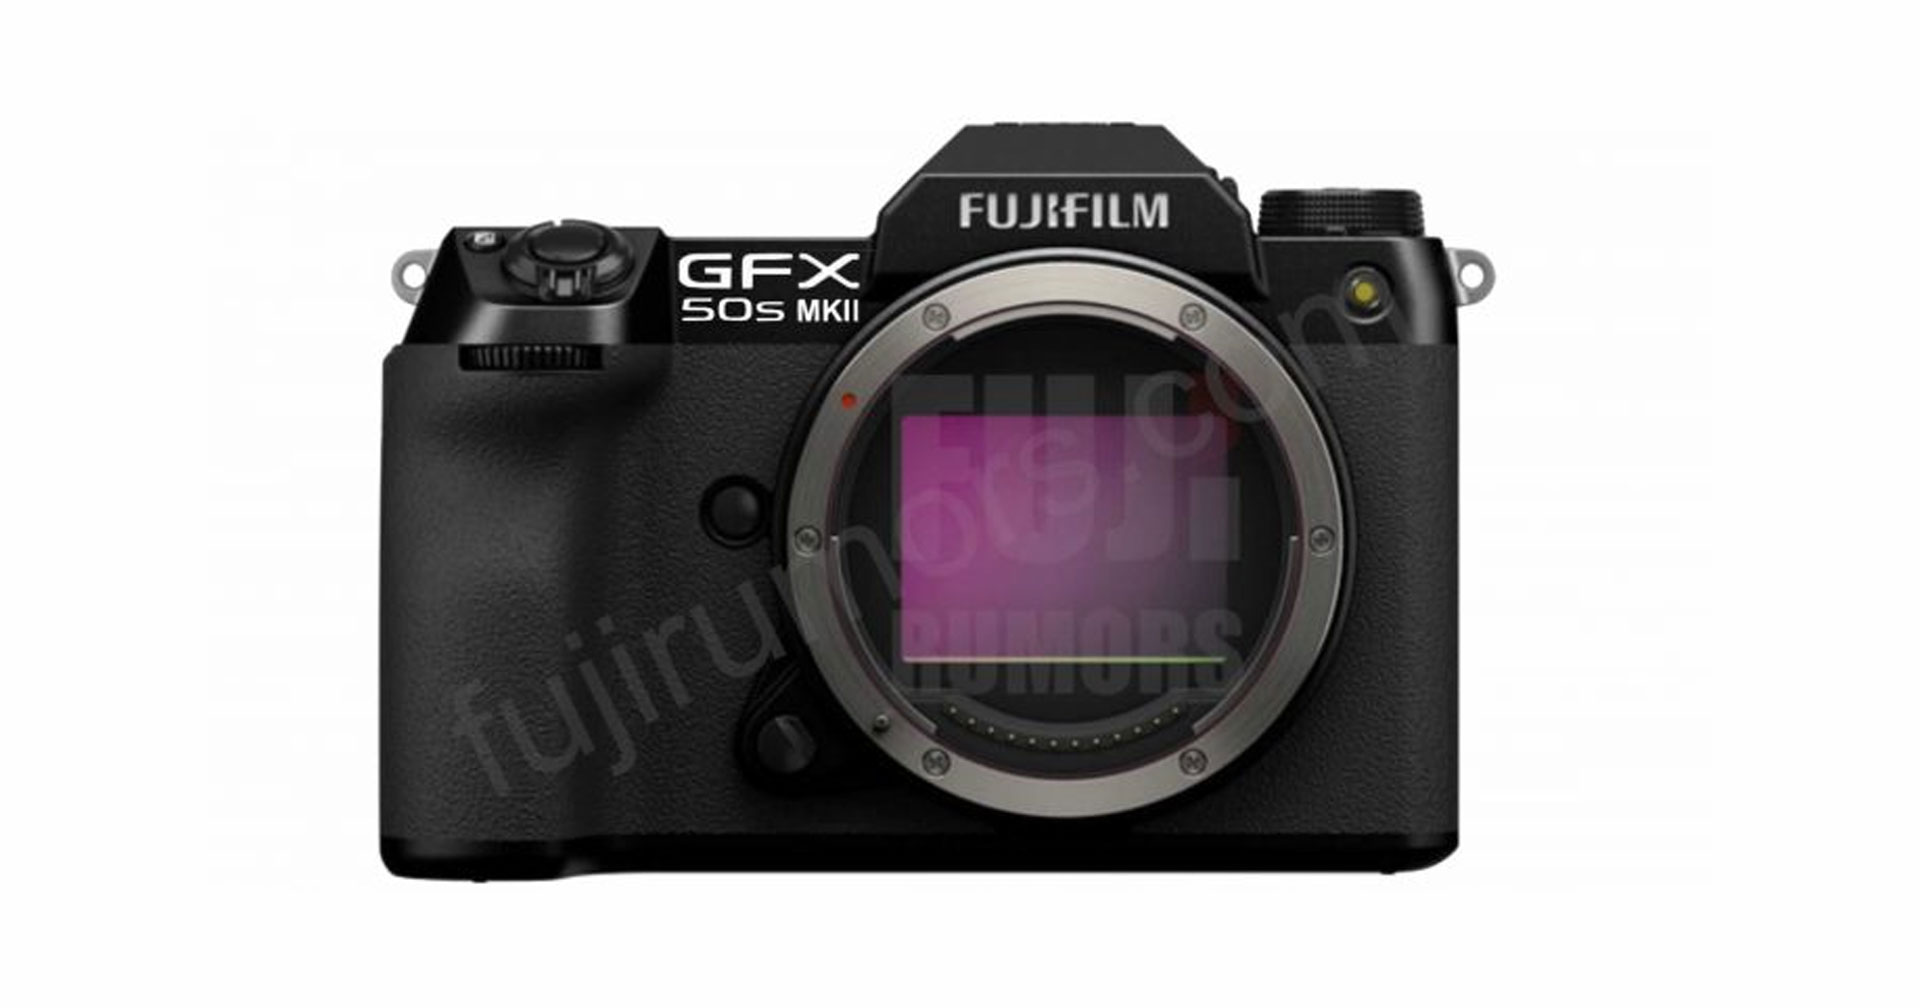 Fujifilm GFX50S MKII